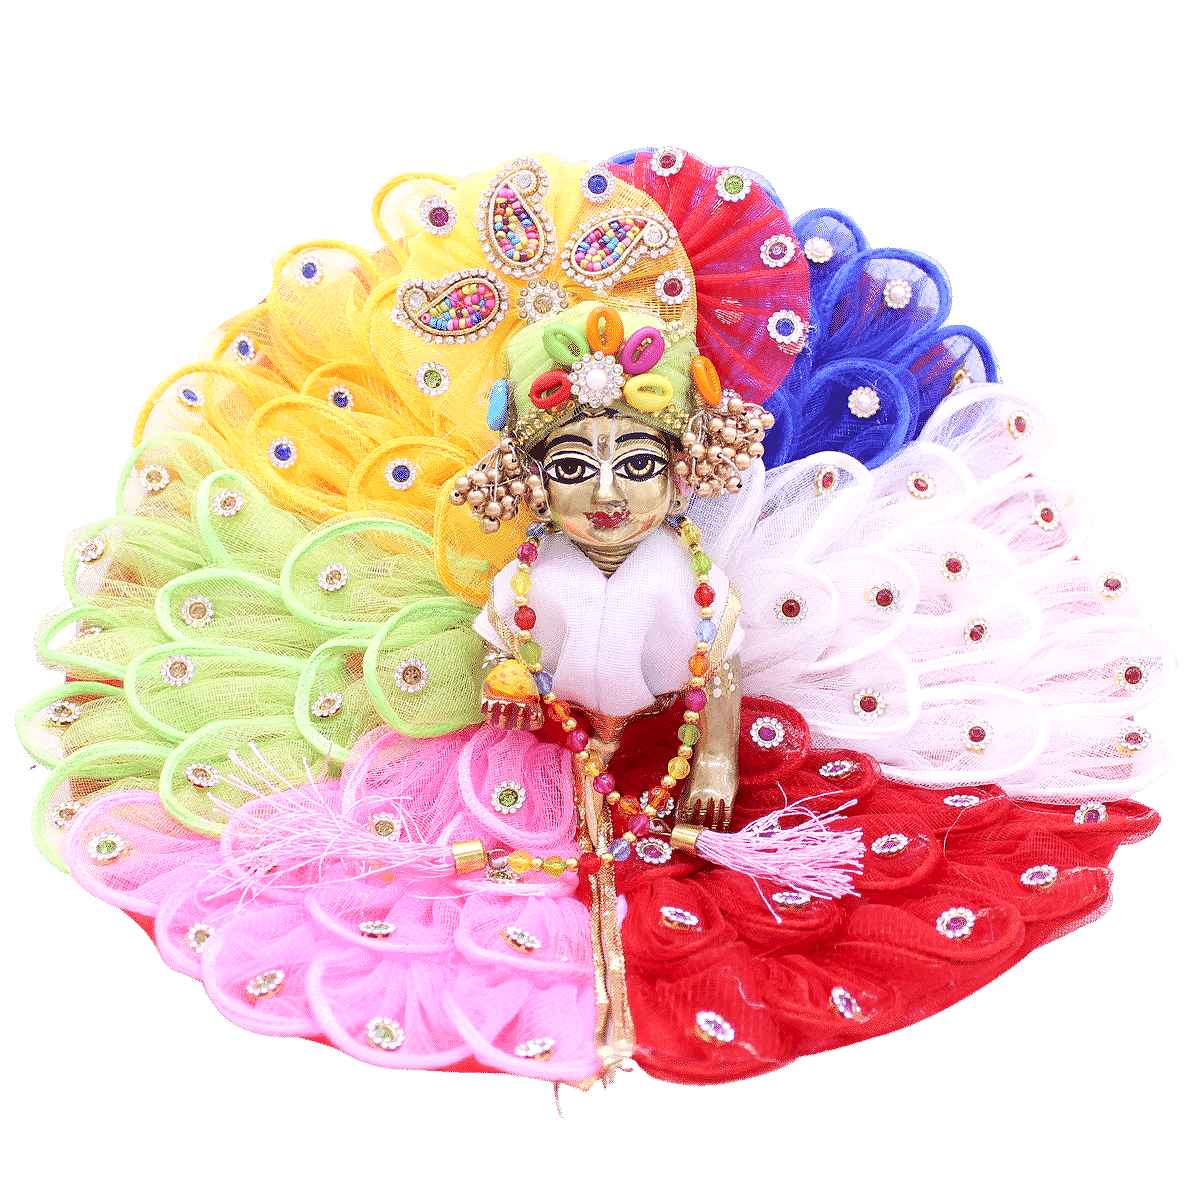 Laddu gopal dresses KANHA JI DRESS Dress Price in India - Buy Laddu gopal dresses  KANHA JI DRESS Dress online at Flipkart.com